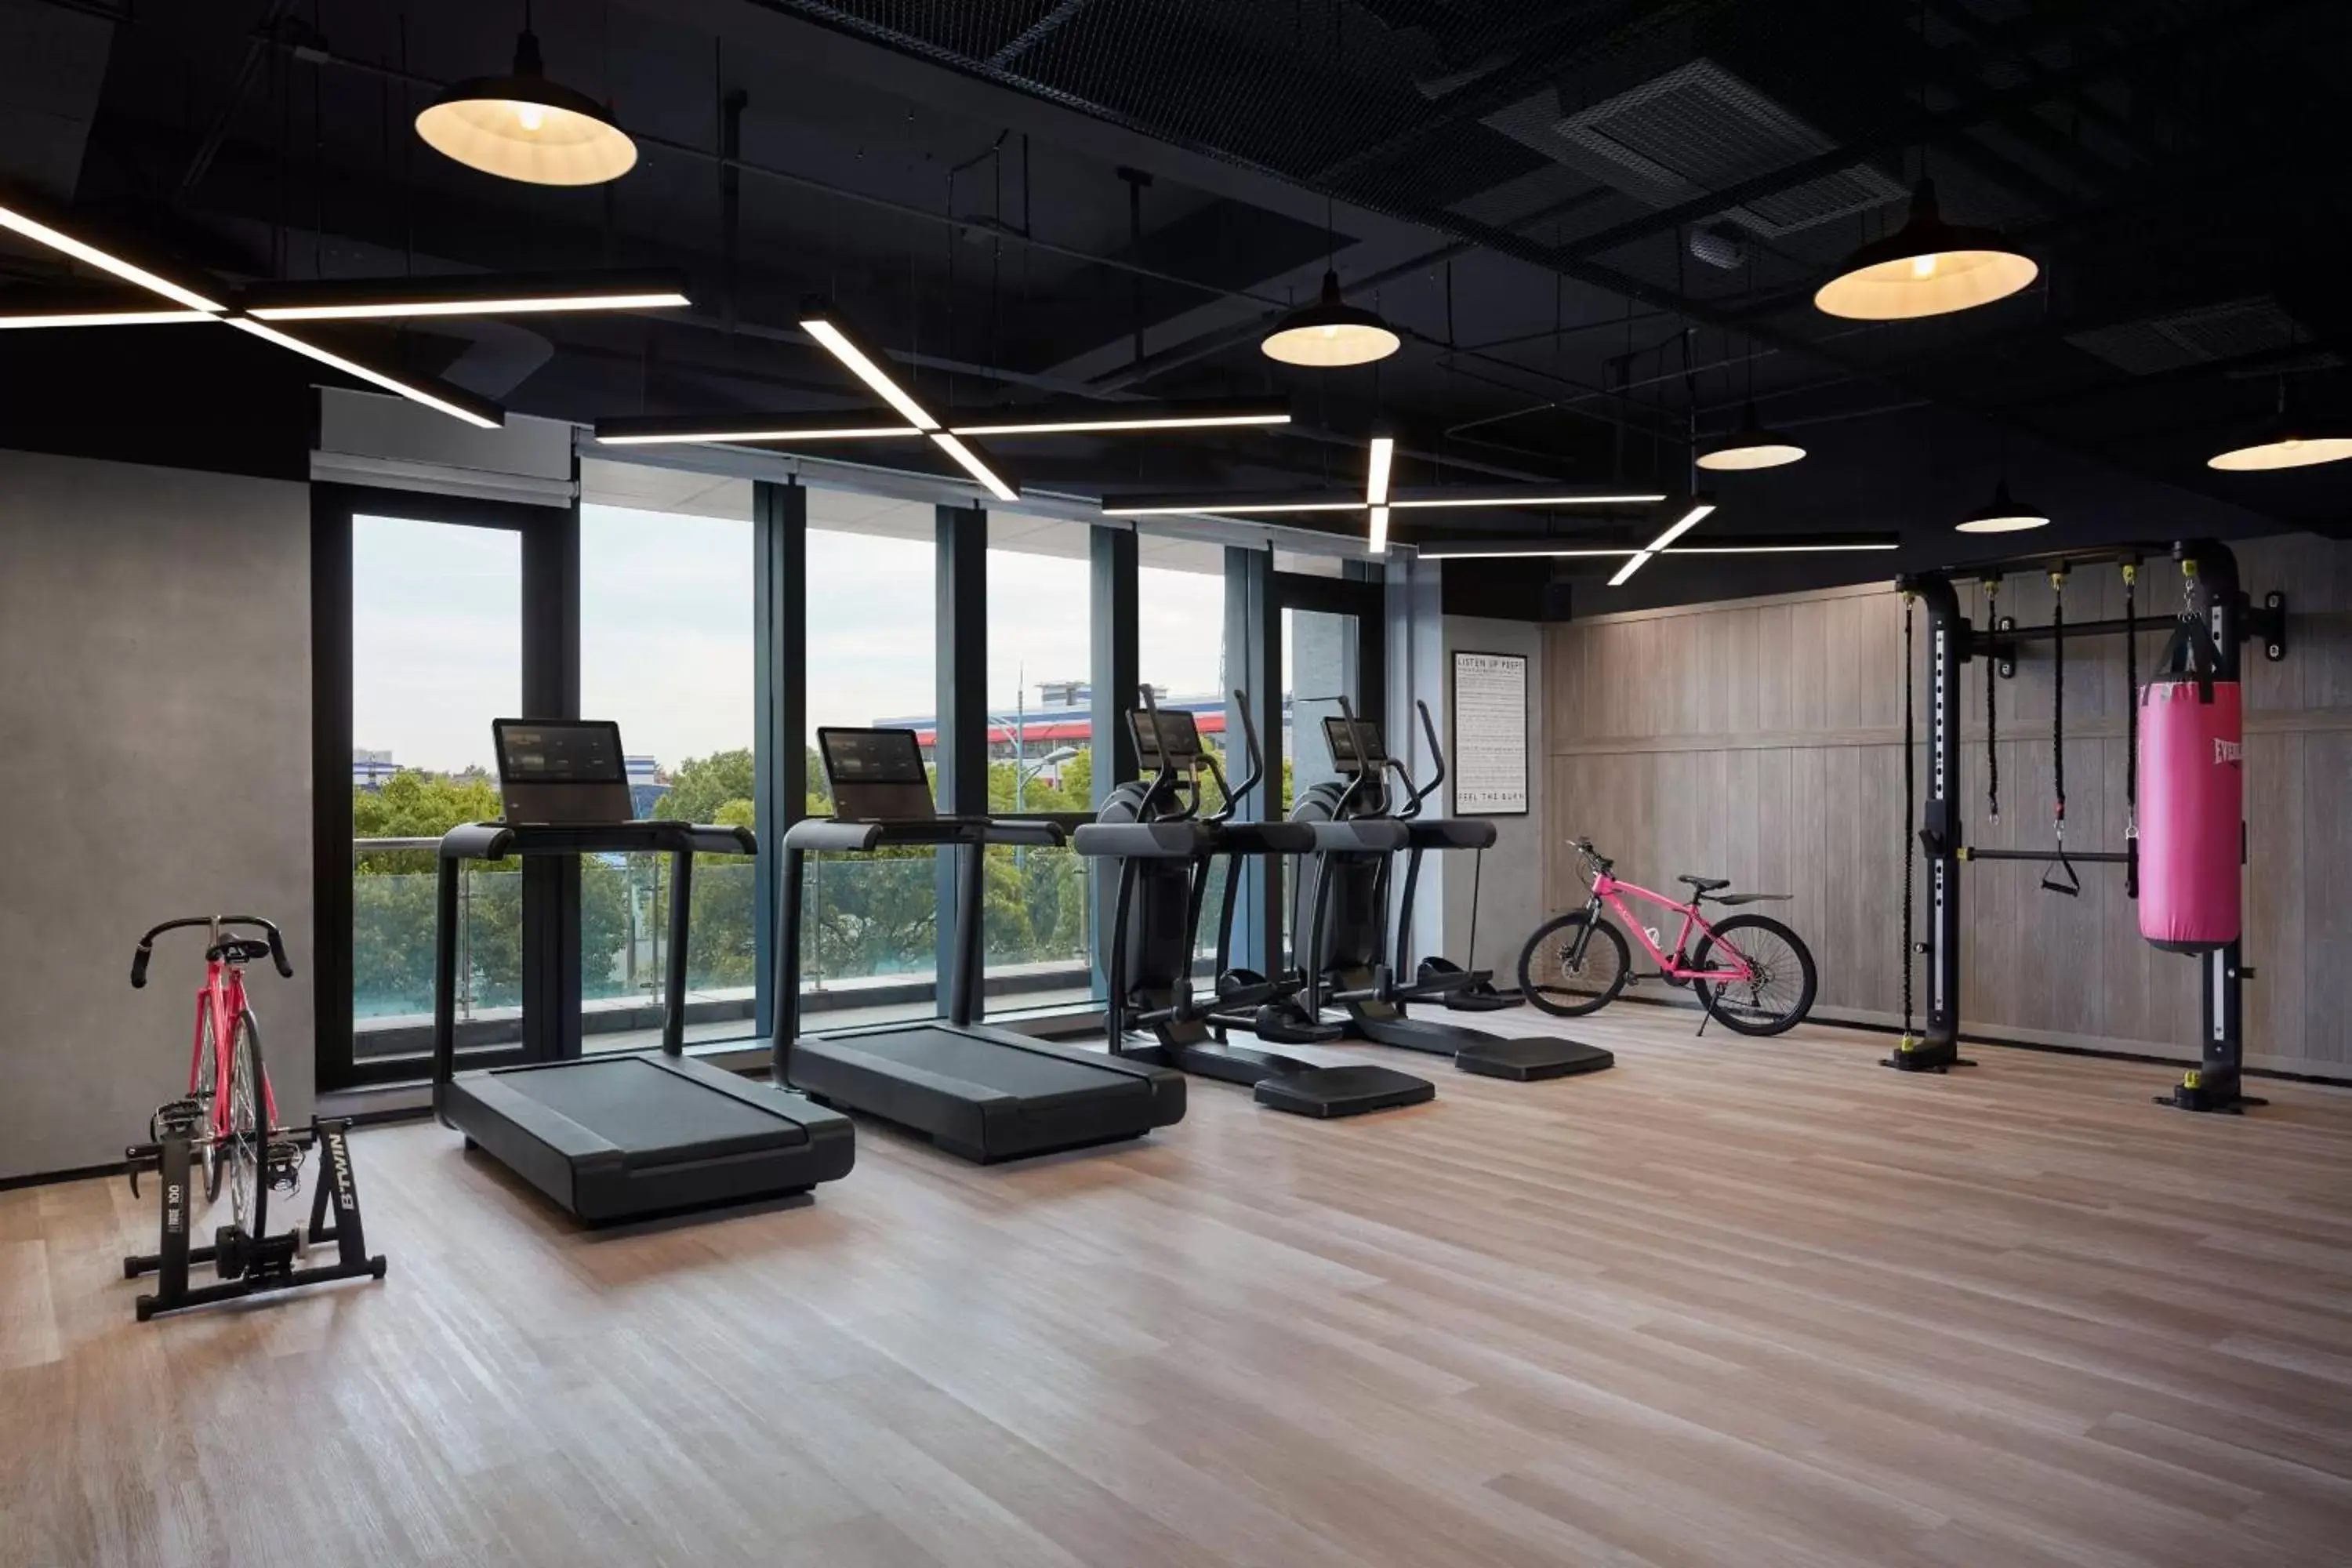 Fitness centre/facilities, Fitness Center/Facilities in Moxy Shanghai Hongqiao NECC